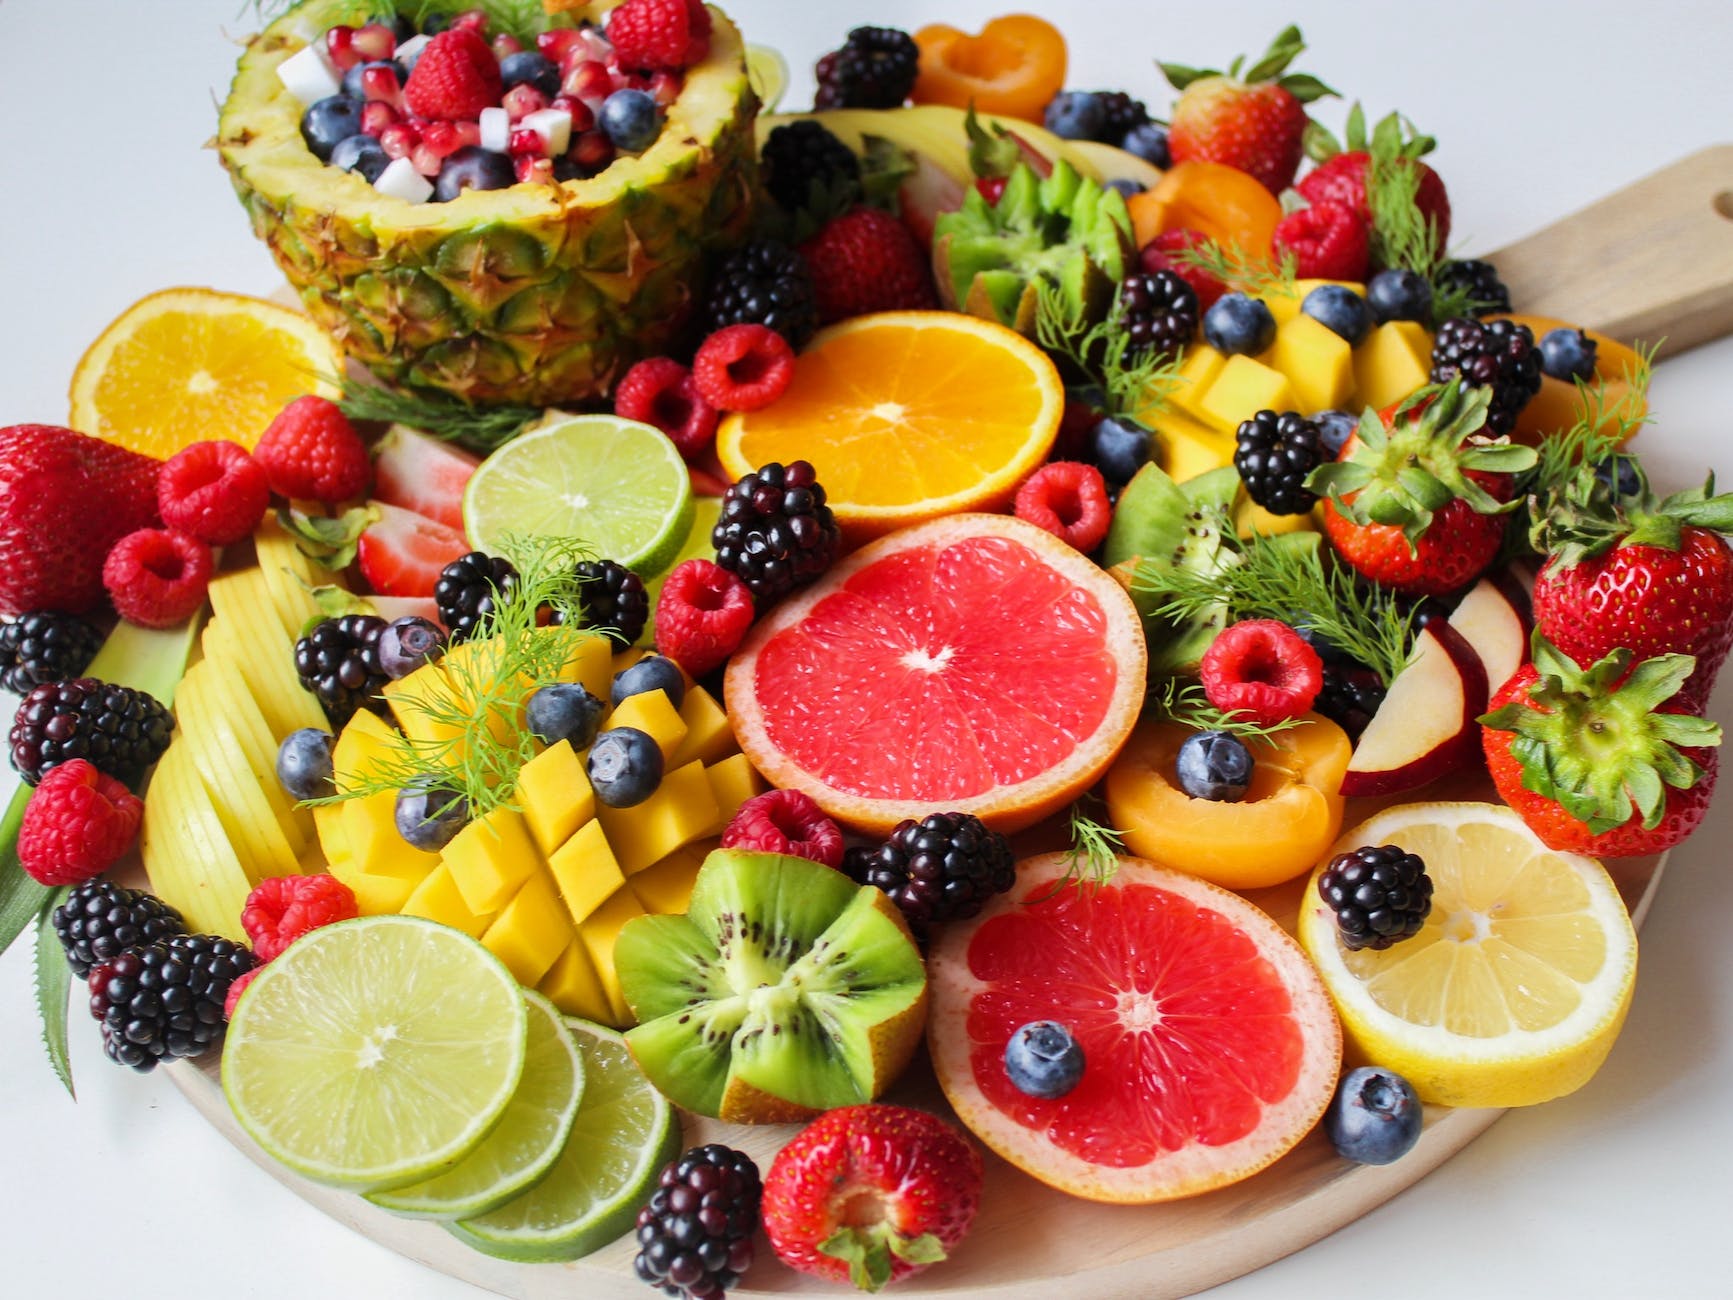 sliced fruits on tray. manfaat buah untuk diet